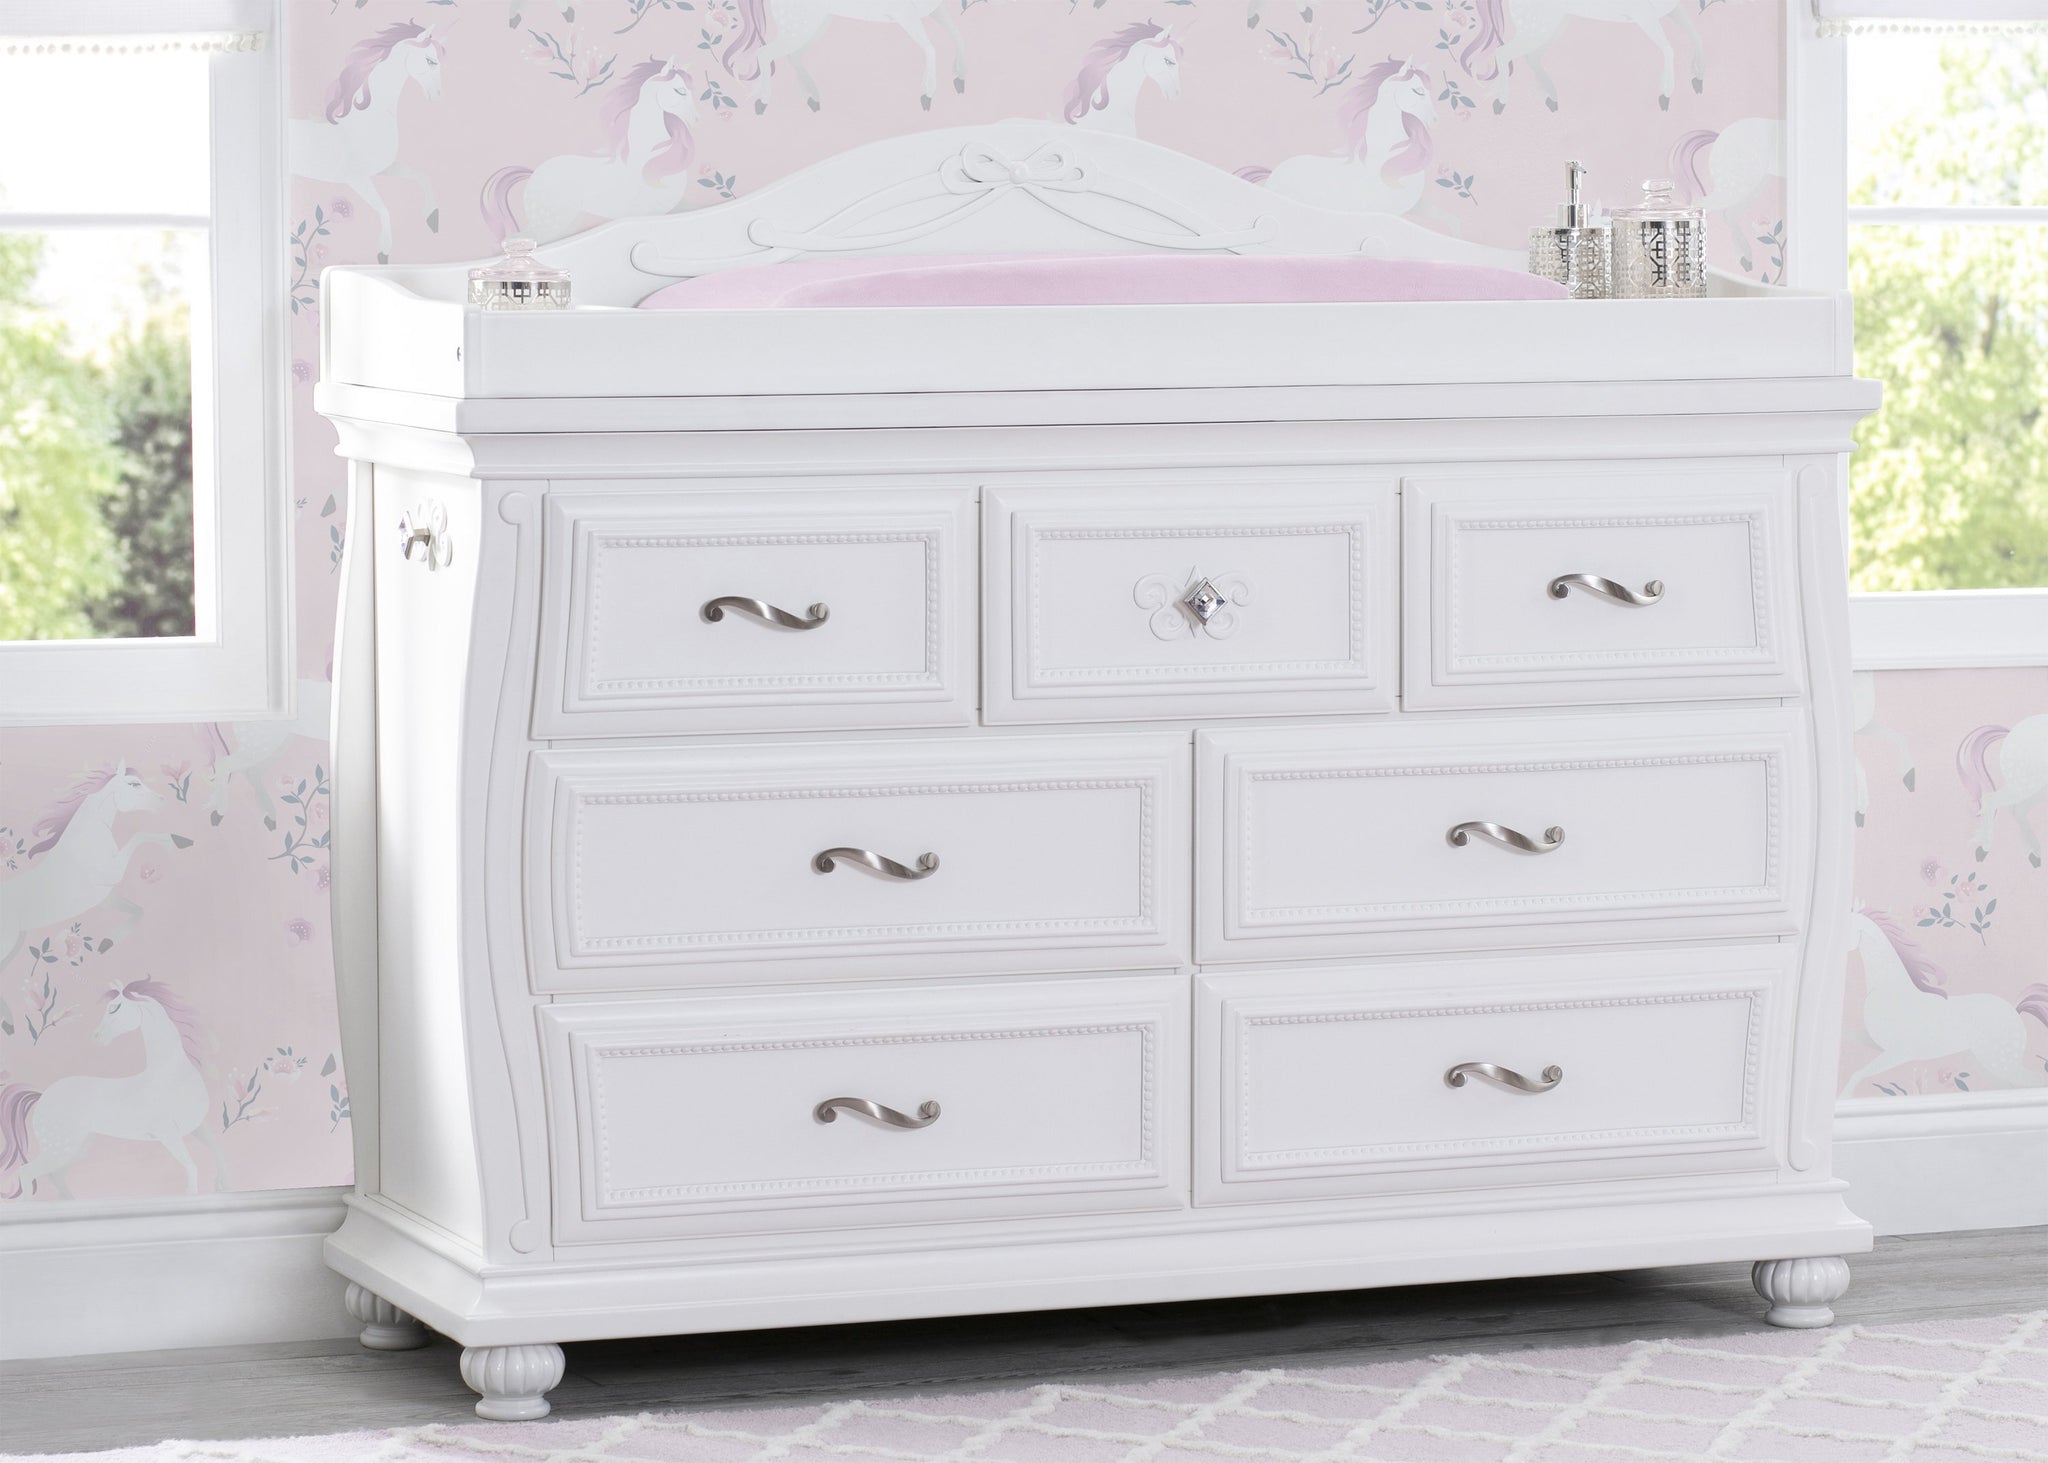 Fairytale 7 Drawer Dresser With Changing Top Delta Children